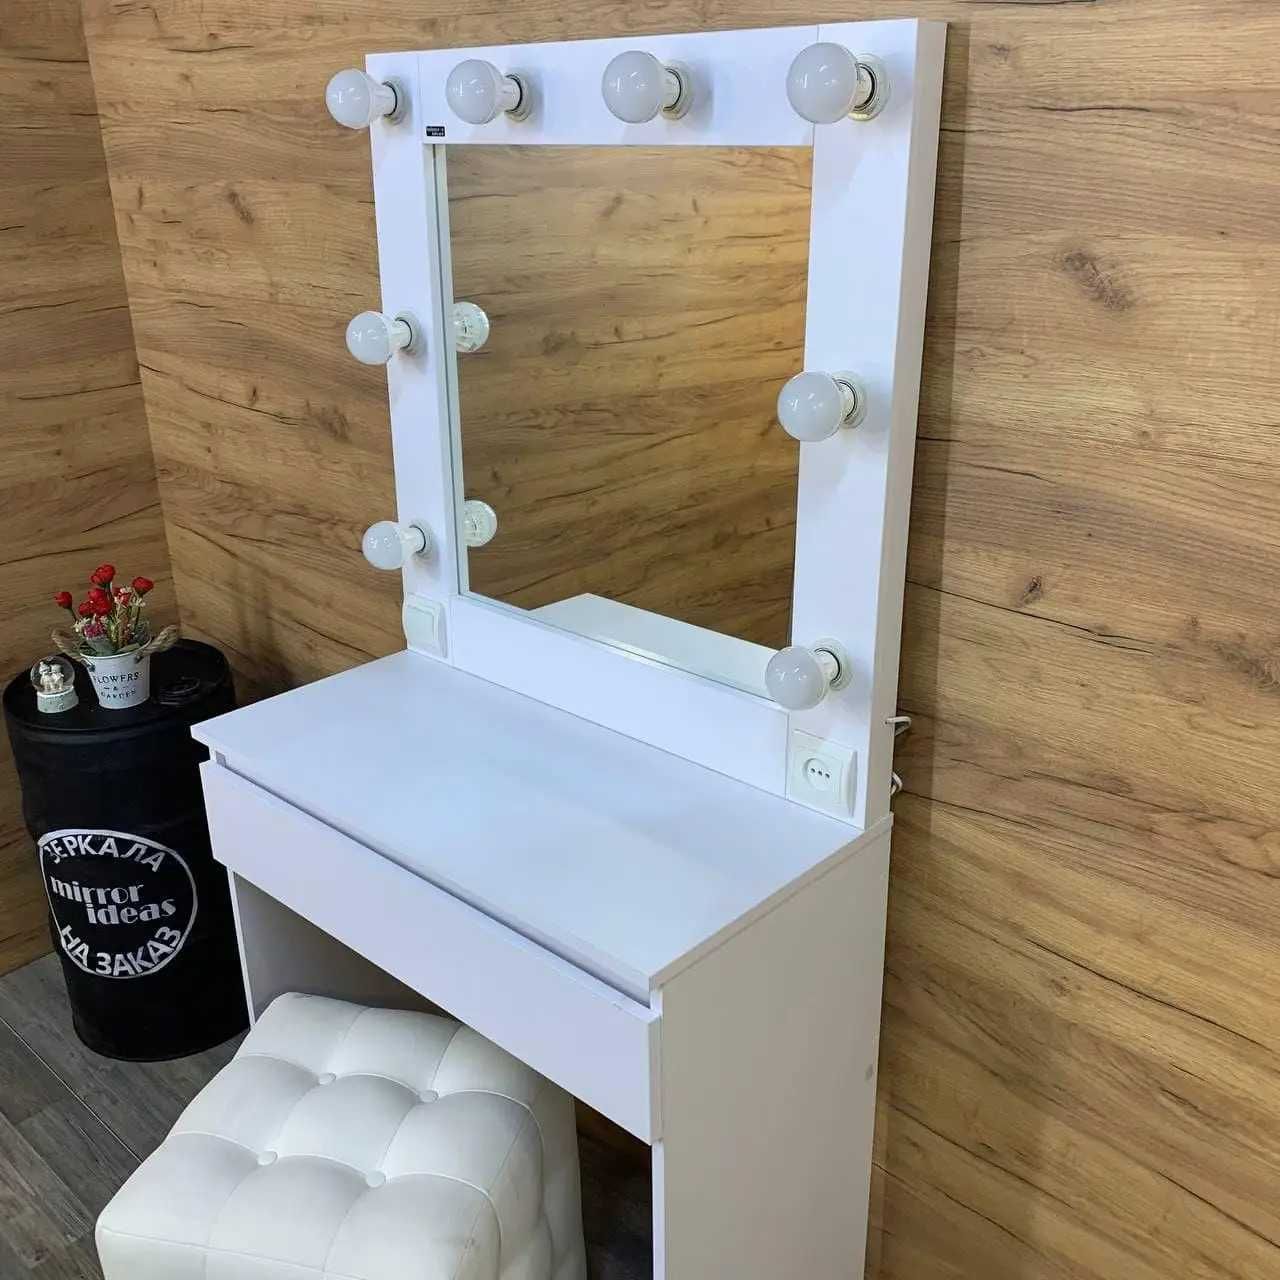 Гримерный туалетный столик косметический для визажа